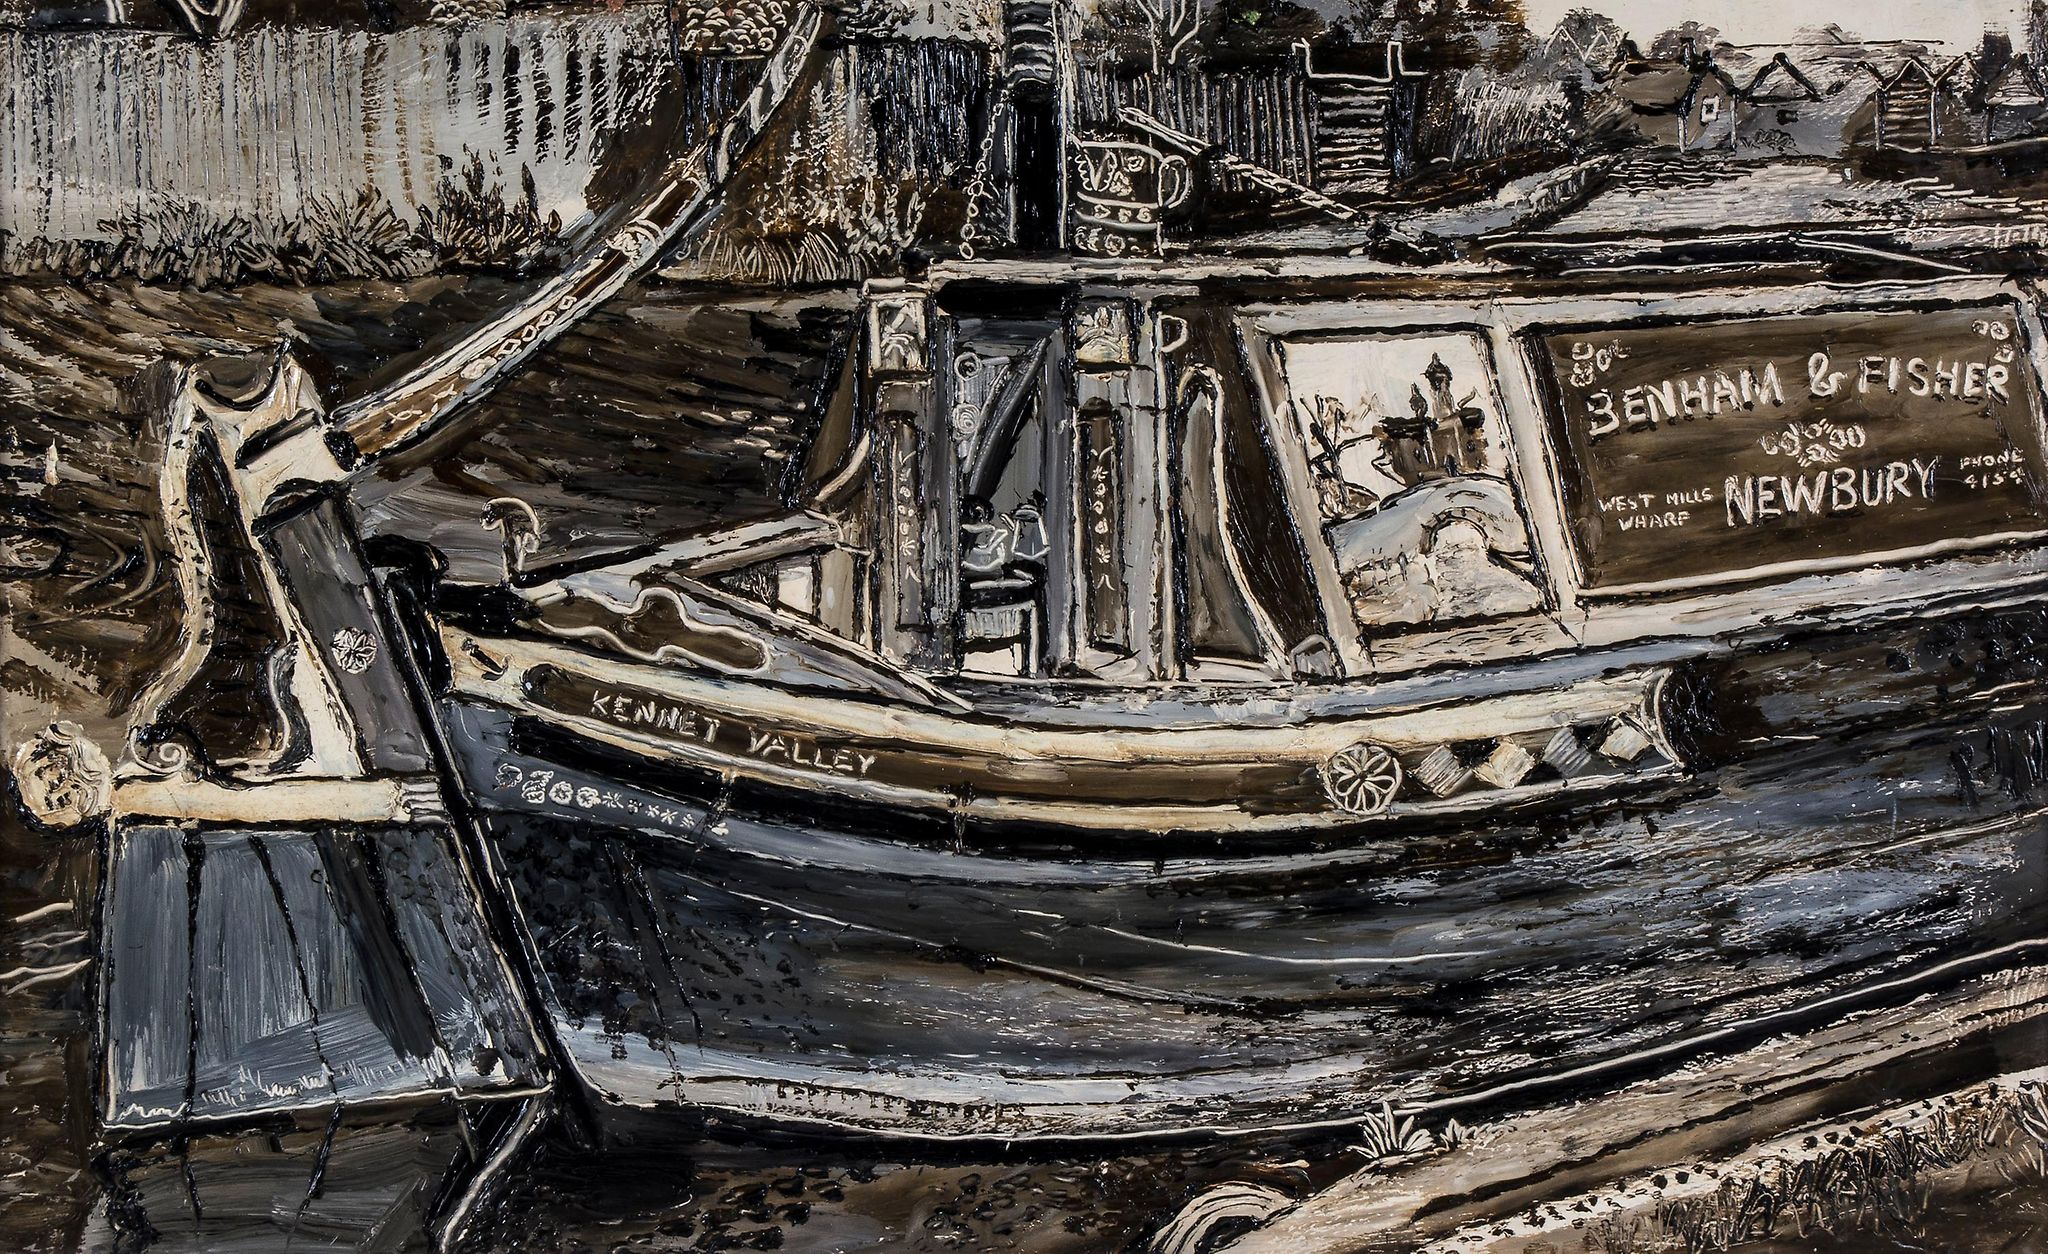 Fred Yates (1922-2008) - West Mills Wharf, Newbury oil on board 18 1/2 x 30 in., 47 x 76.3 cm